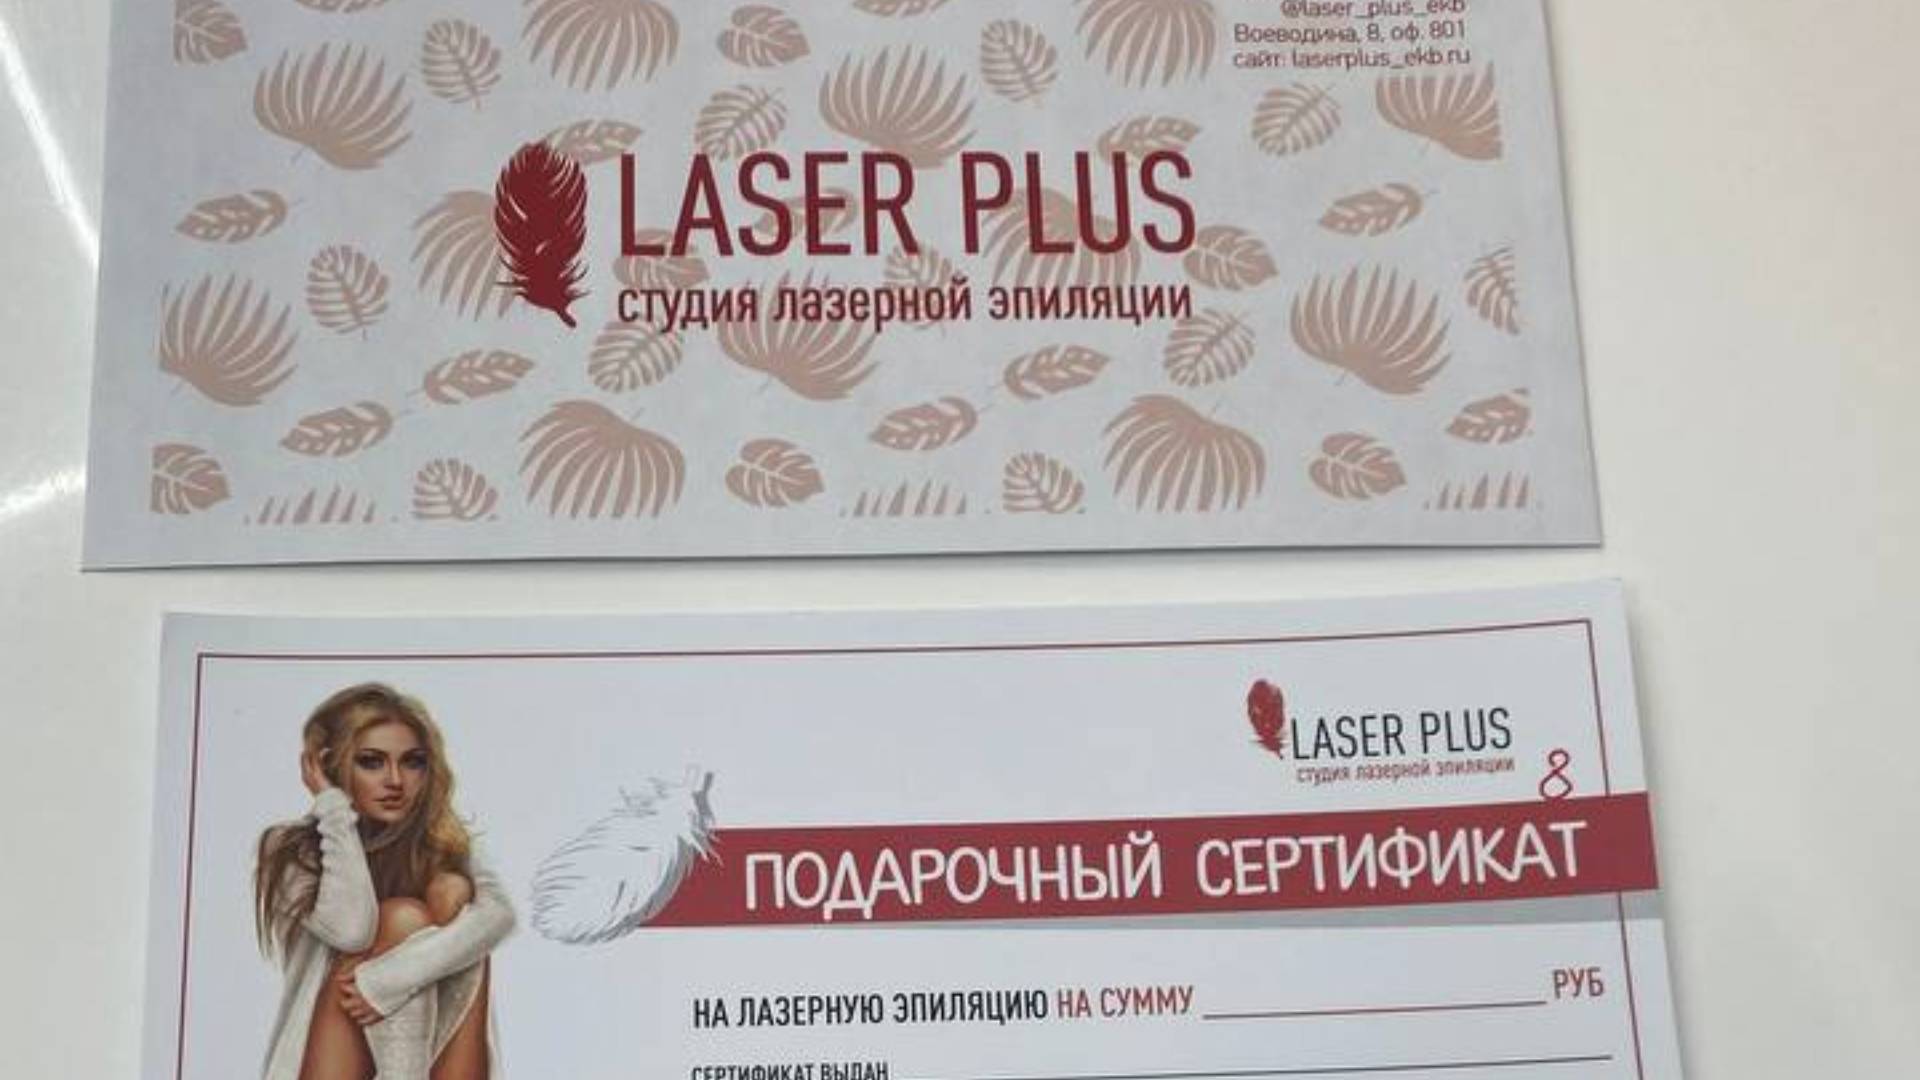 Лазерная эпиляция в салоне Laser Plus без лицензии и мед.образования на Воеводина, 8